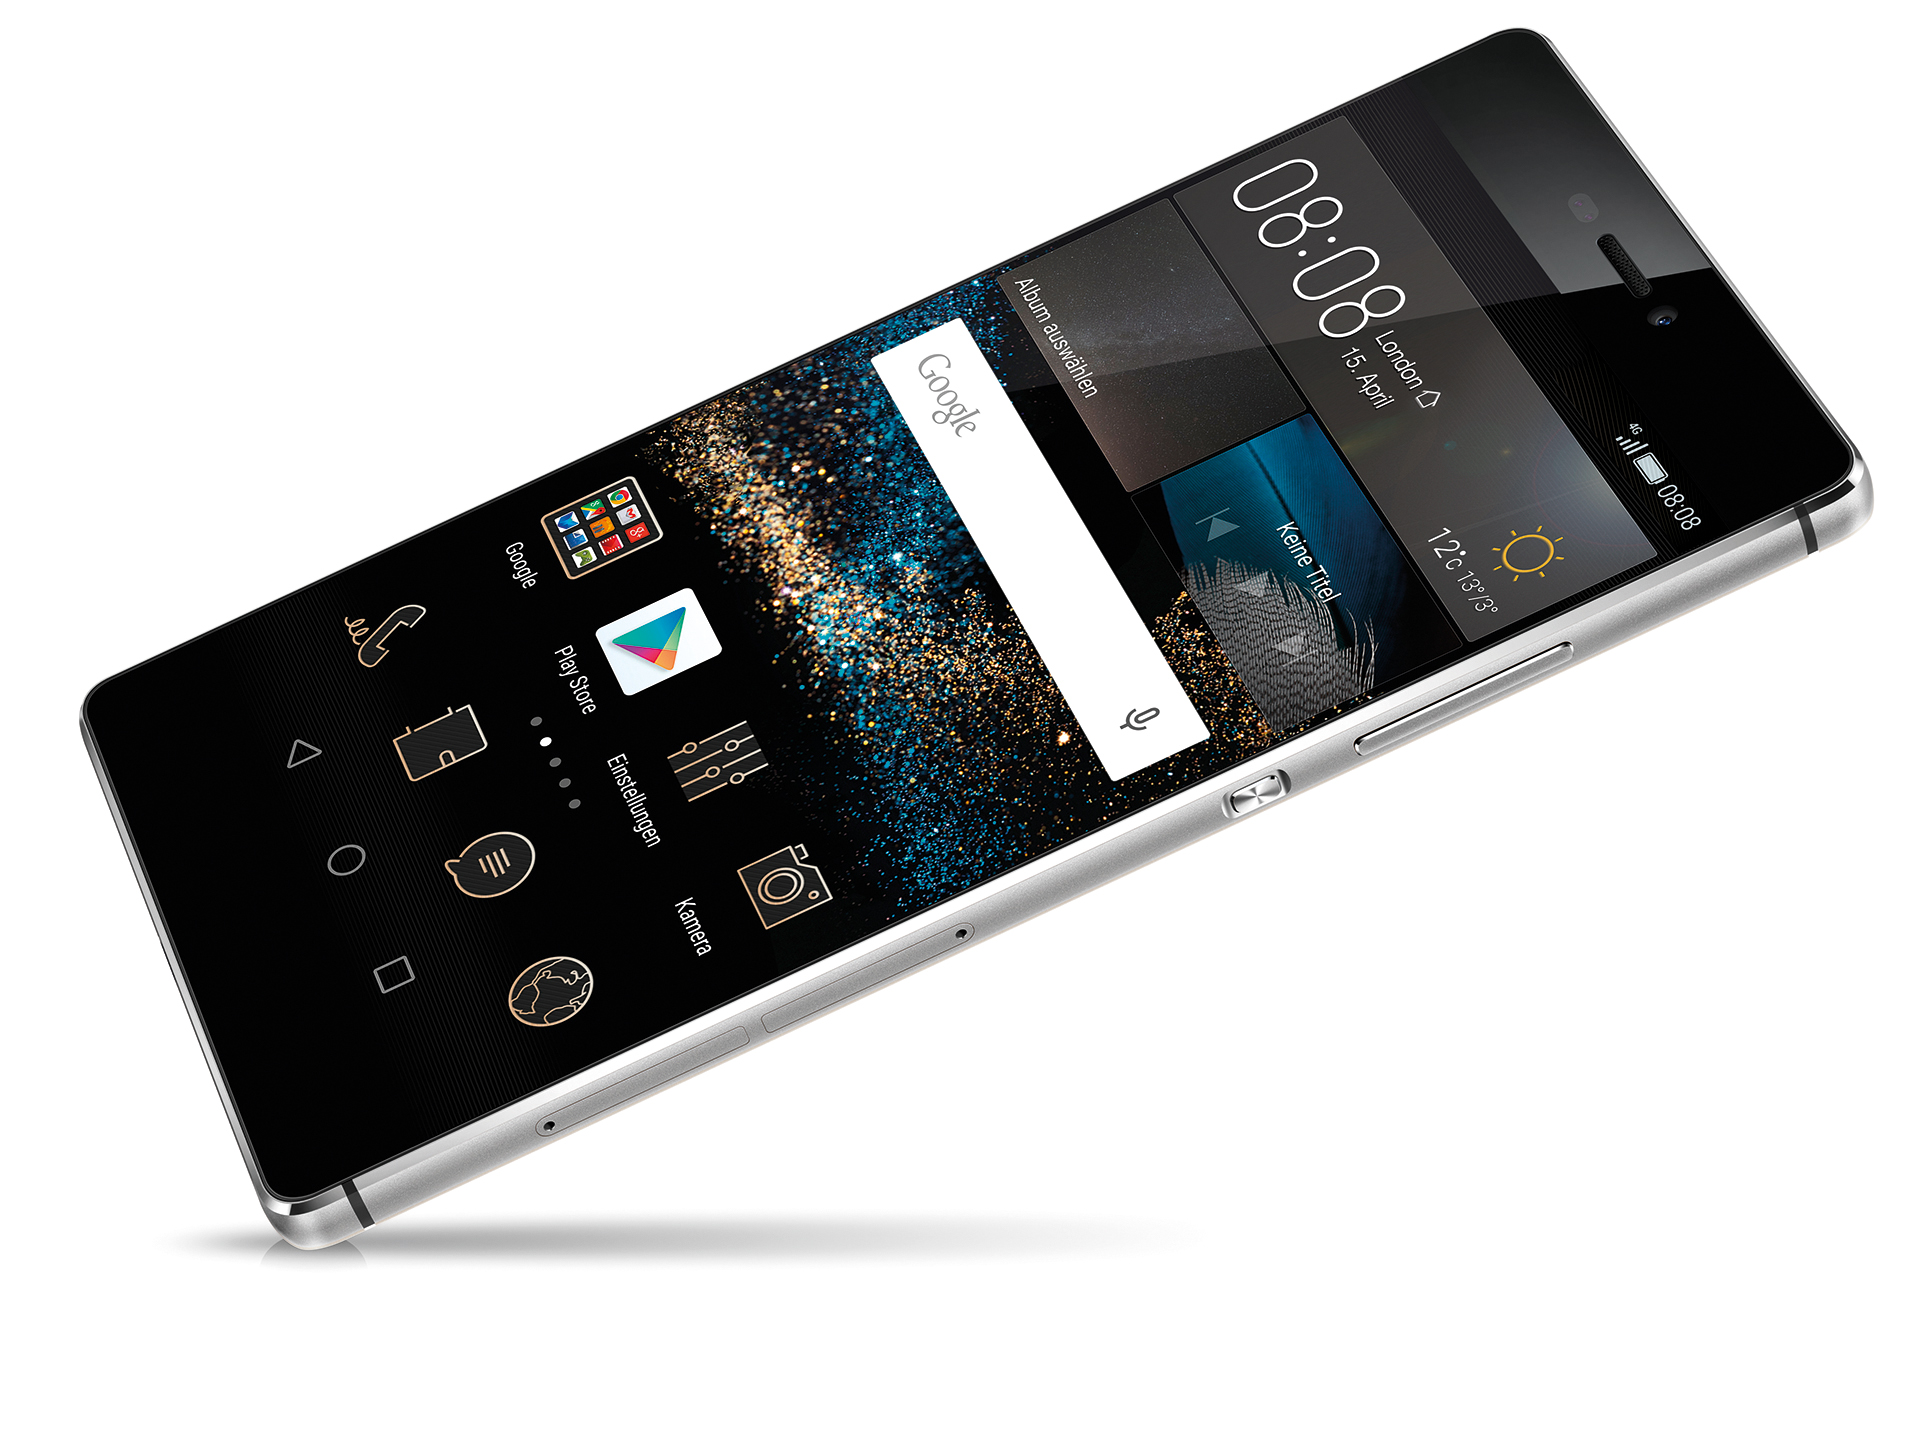 pensioen vraag naar boog Huawei P8 Smartphone First Impressions - NotebookCheck.net Reviews